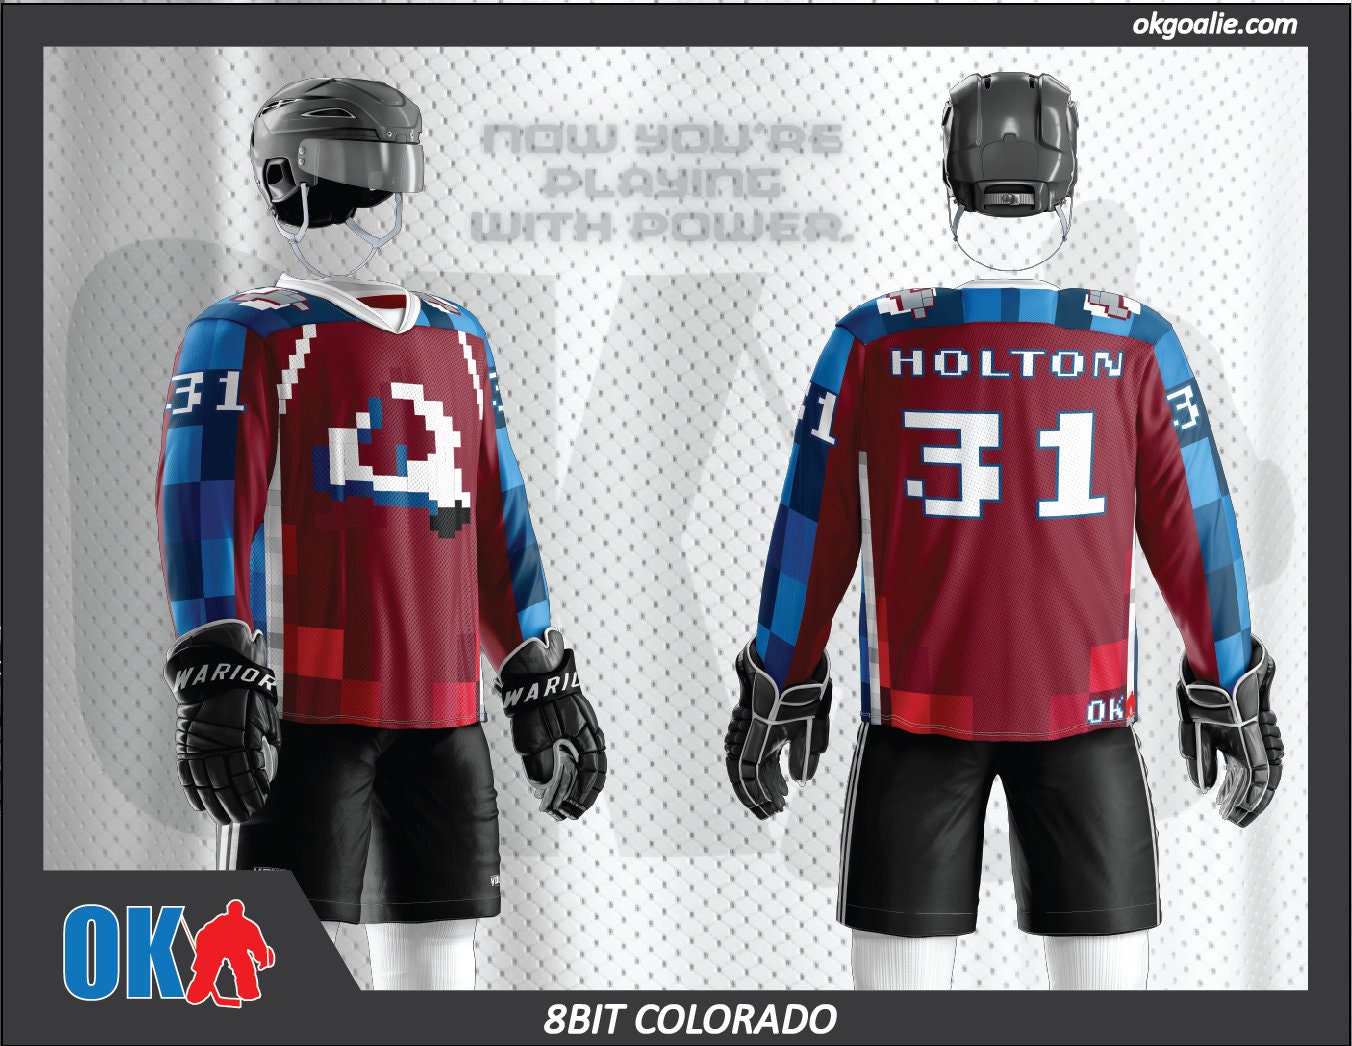 8bit Colorado Hockey Jersey – okgoalie